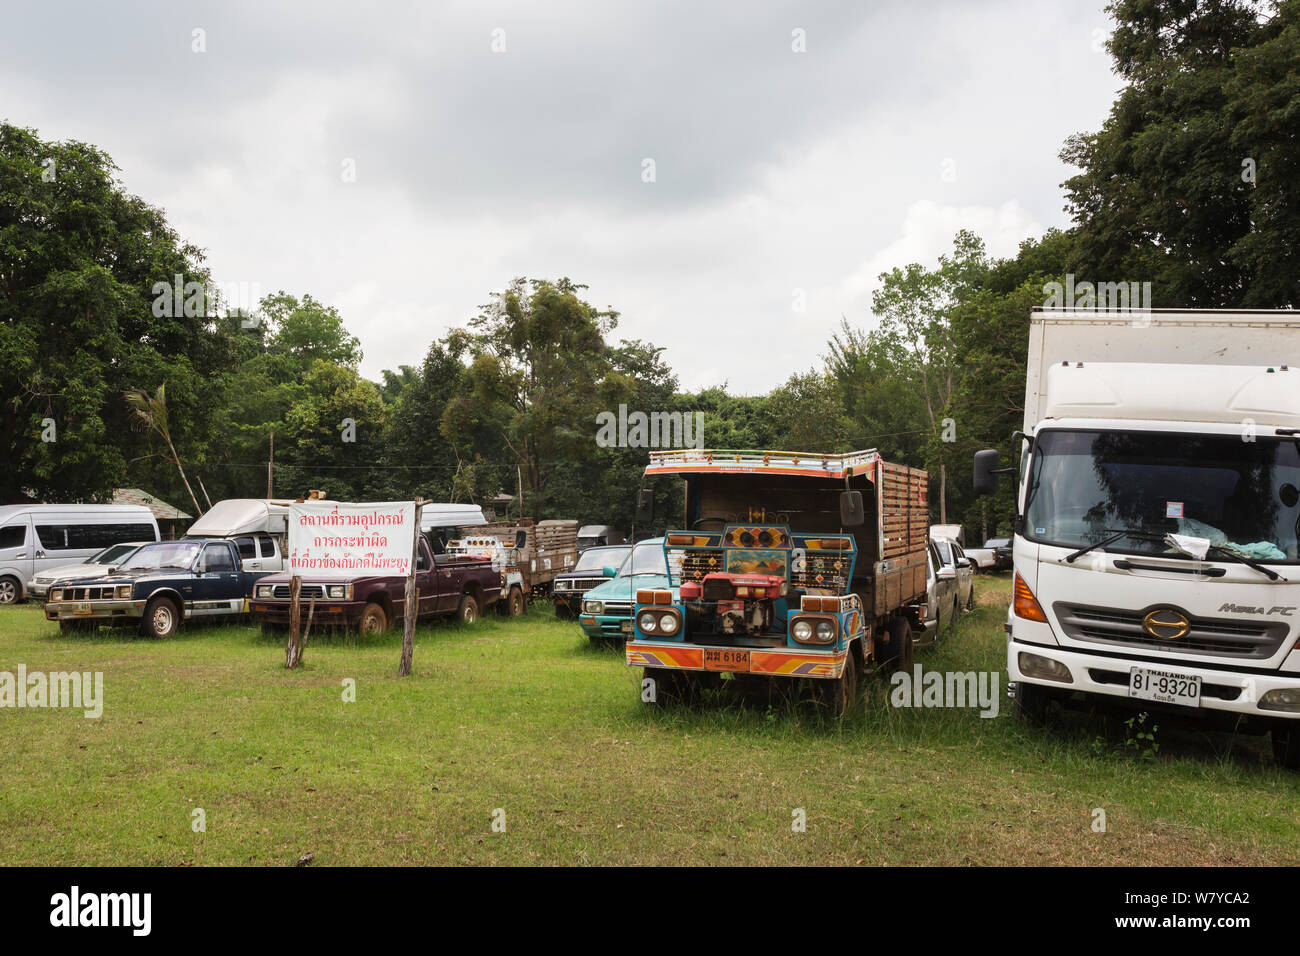 Les véhicules confisqués à des braconniers, Siam rosewood tree stockées en tant que preuve, Thap Lan National Park, Complexe forestier de Dong Phayayen-Khao Yai, Thaïlande, de l'est août. Banque D'Images